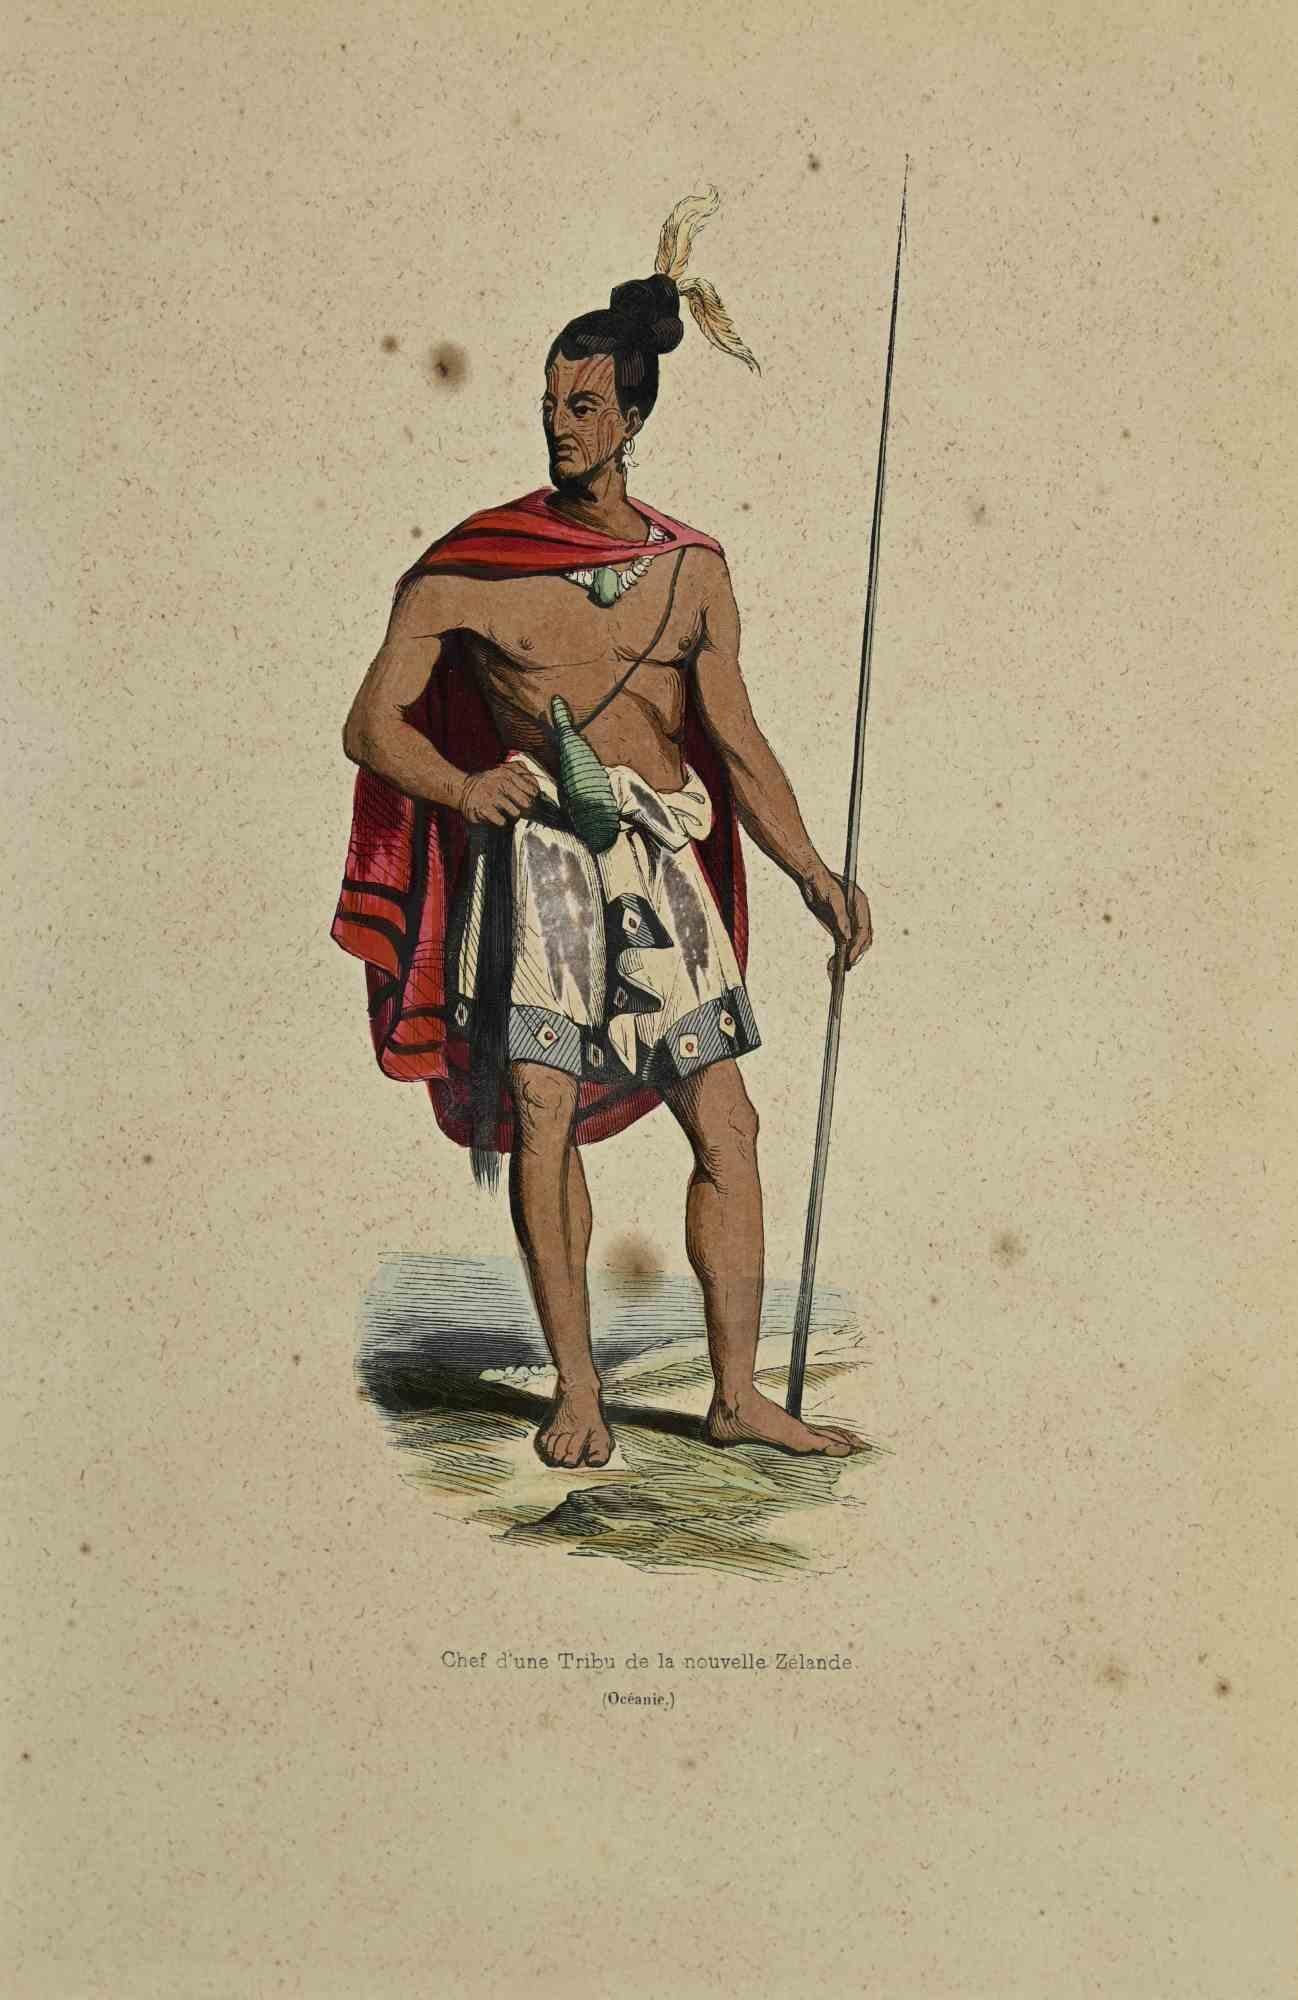 Chef d'une Tribu de la Nouvelle Zelande - Lithograph by Auguste Wahlen - 1844